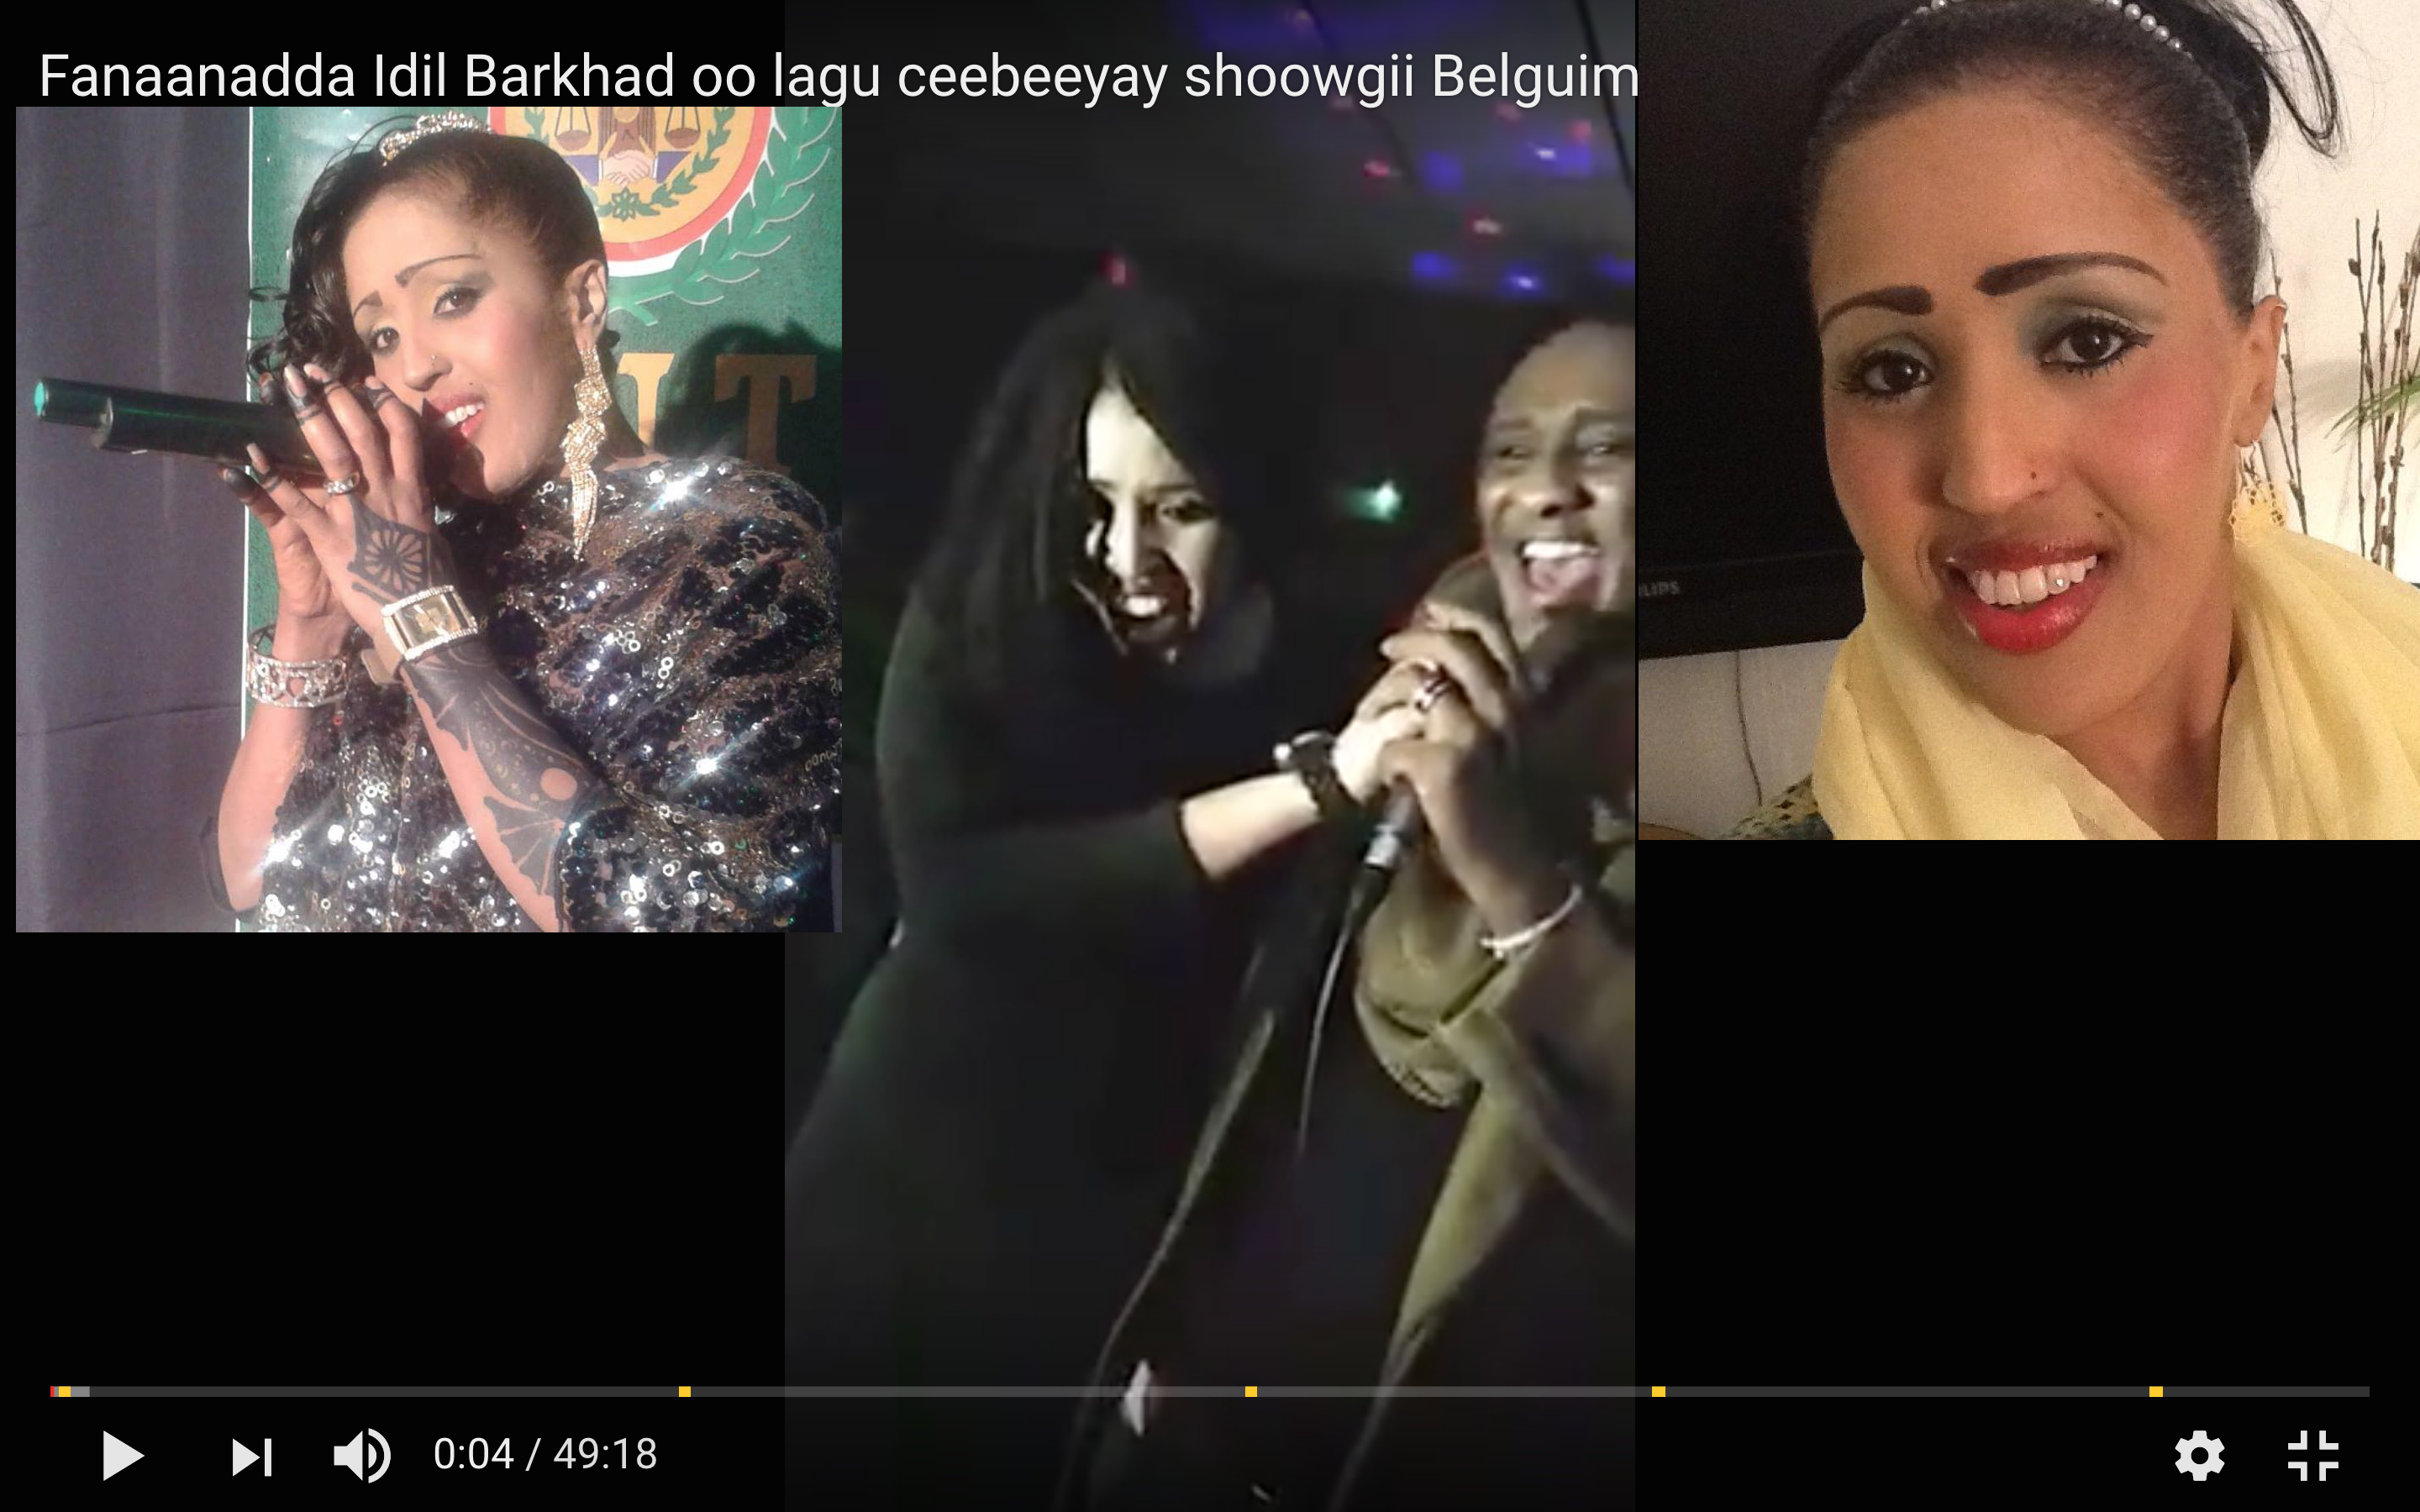 [Daawo] Fanaaadda Idil Barkhad oo lagu ceebeeyay Shoowgii Belgium-ka